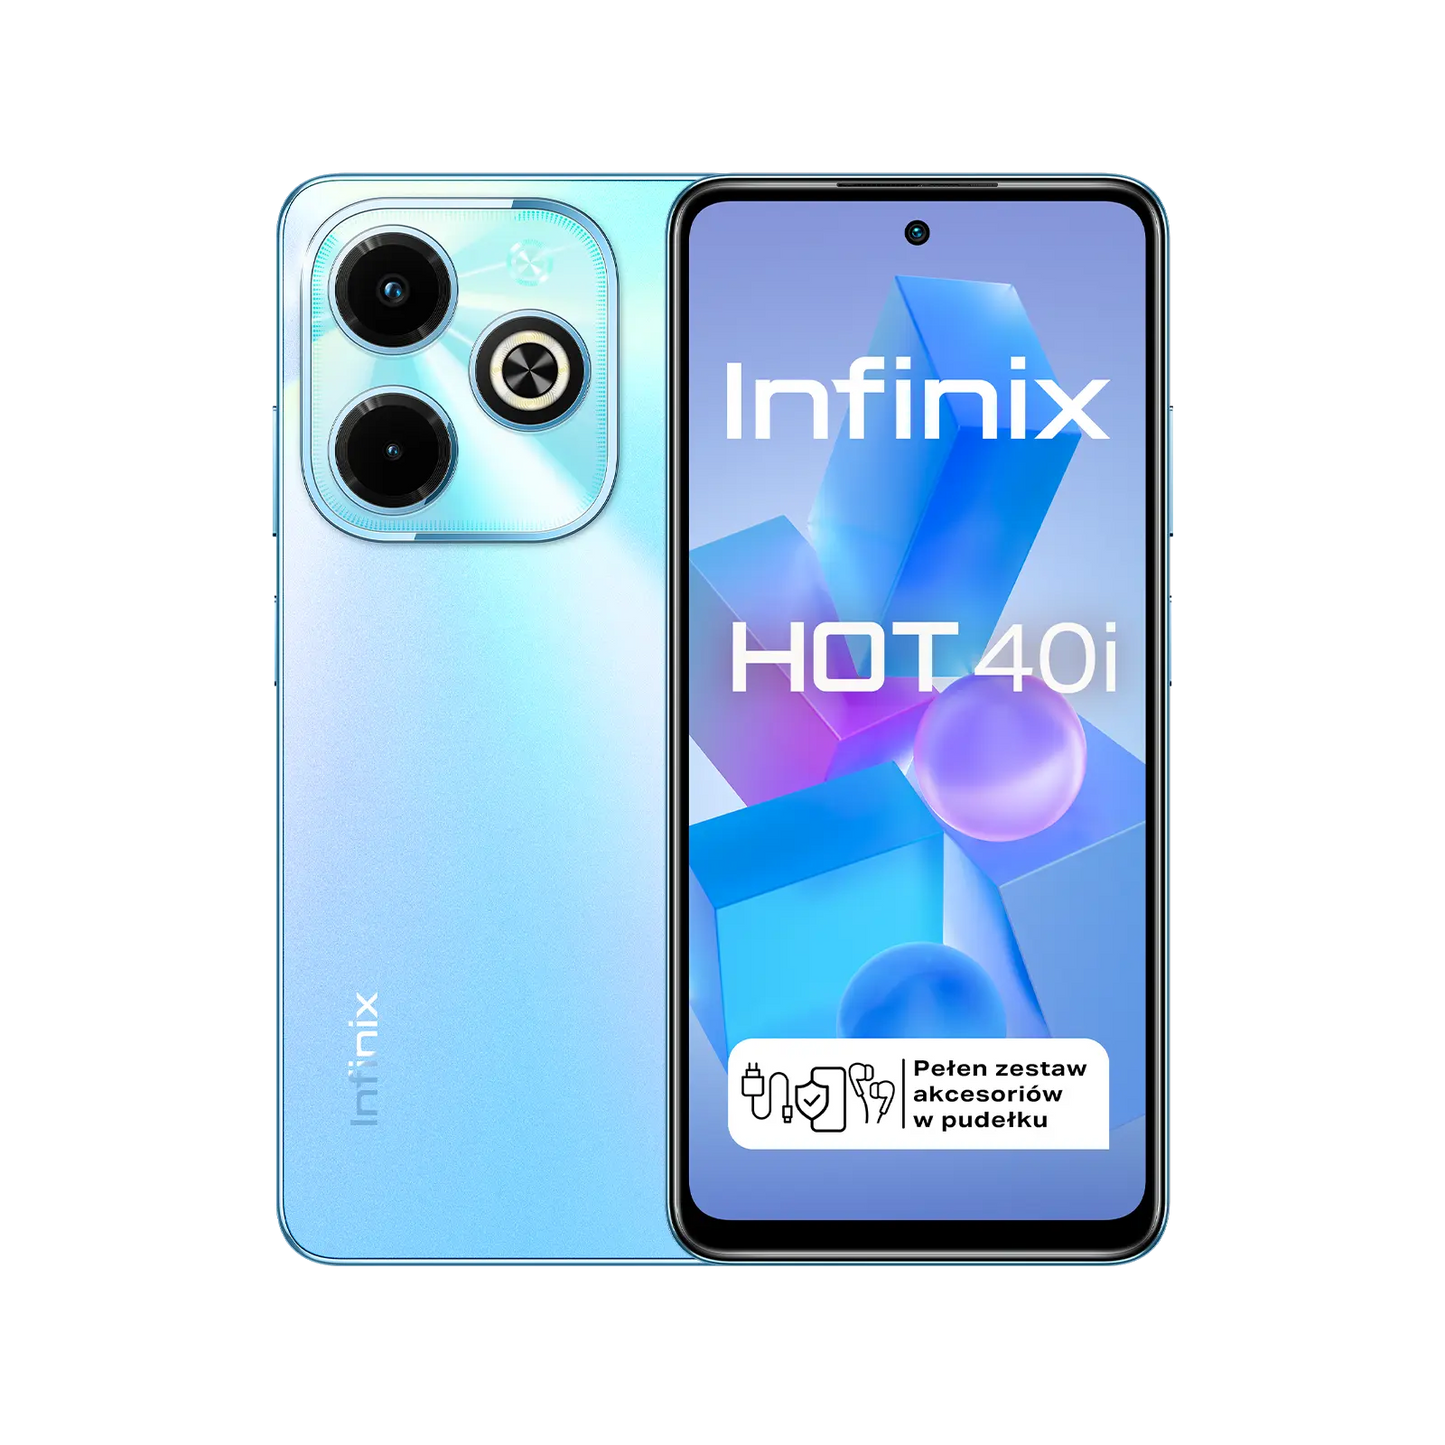 Infinix HOT 40i od Infinix w SimplyBuy.pl